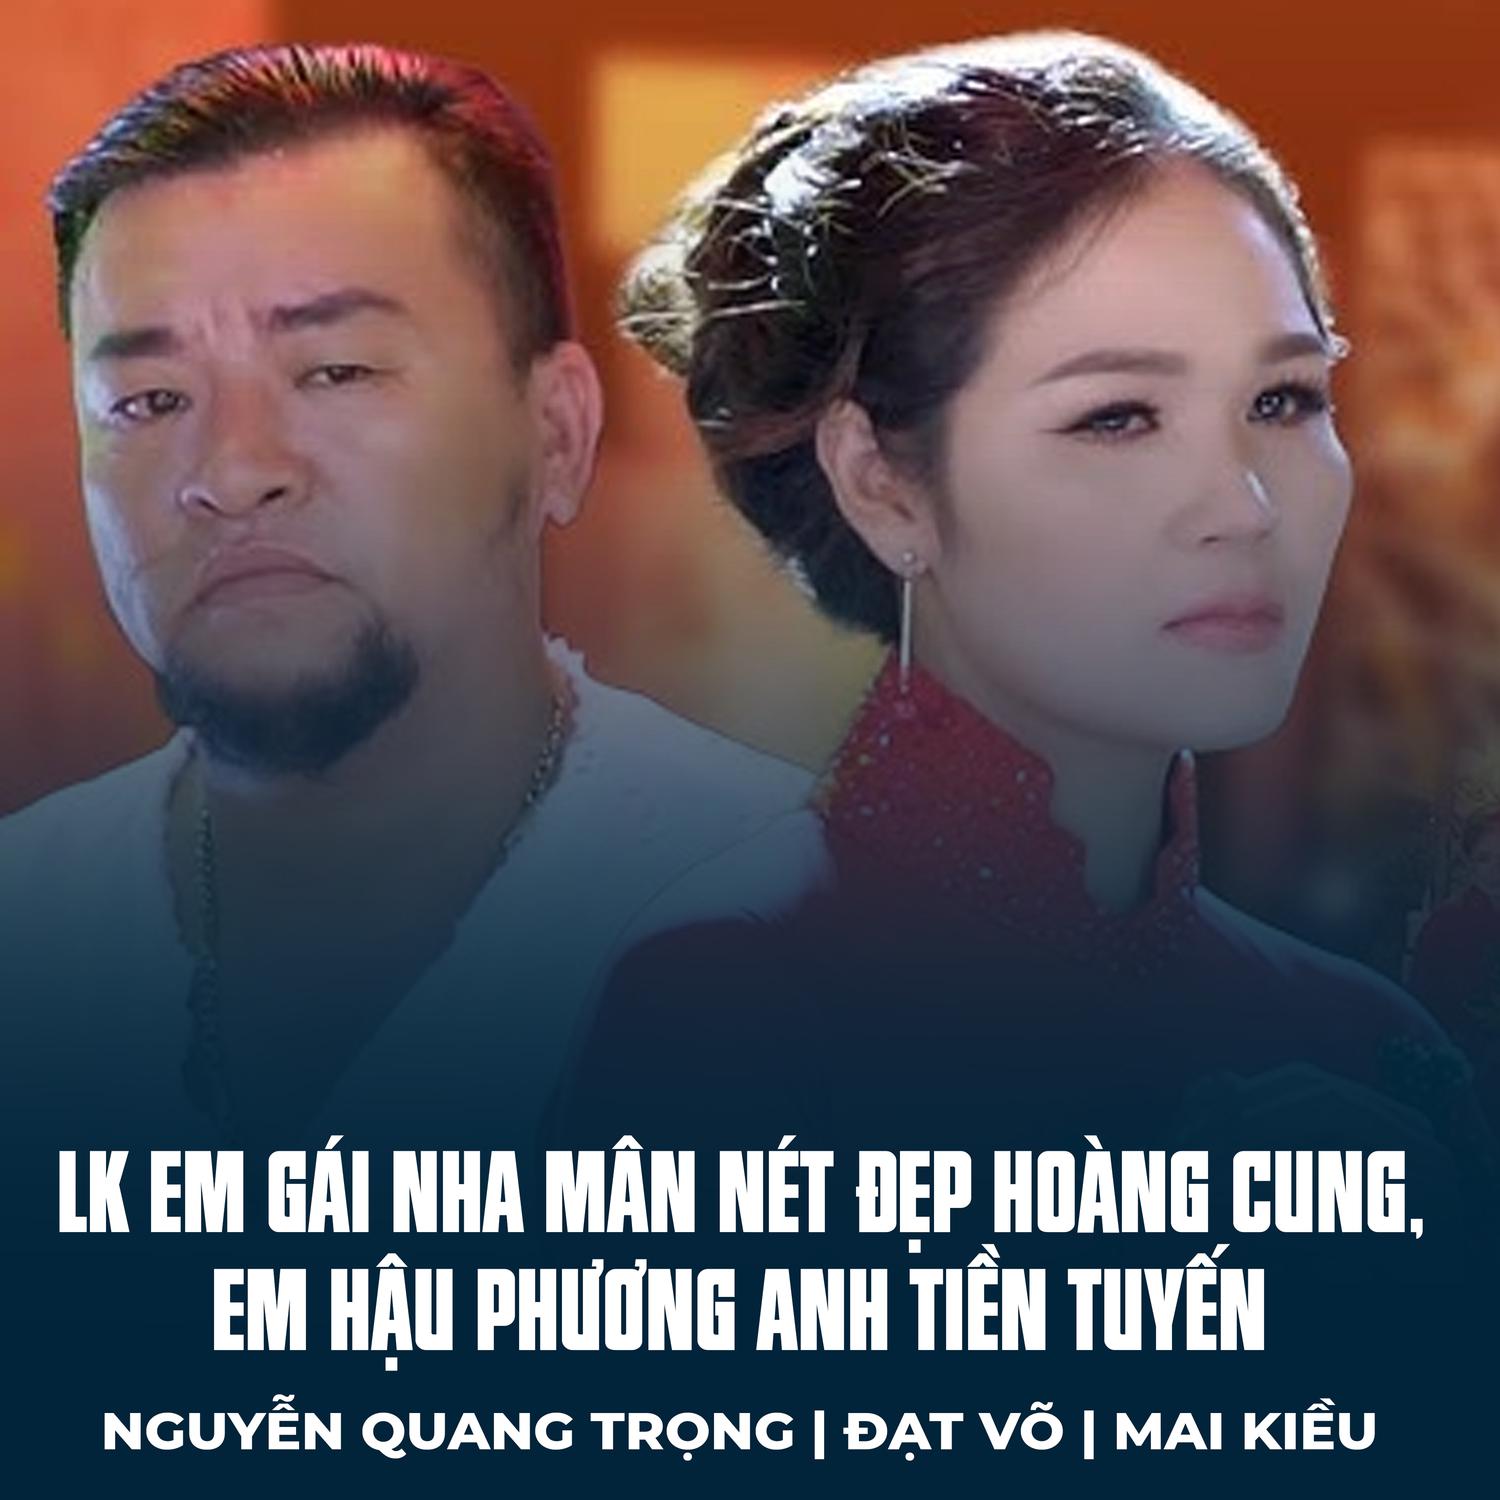 Nguyễn Quang Trọng - LK Em Gái Nha Mân Nét Đẹp Hoàng Cung, Em Hậu Phương Anh Tiền Tuyến